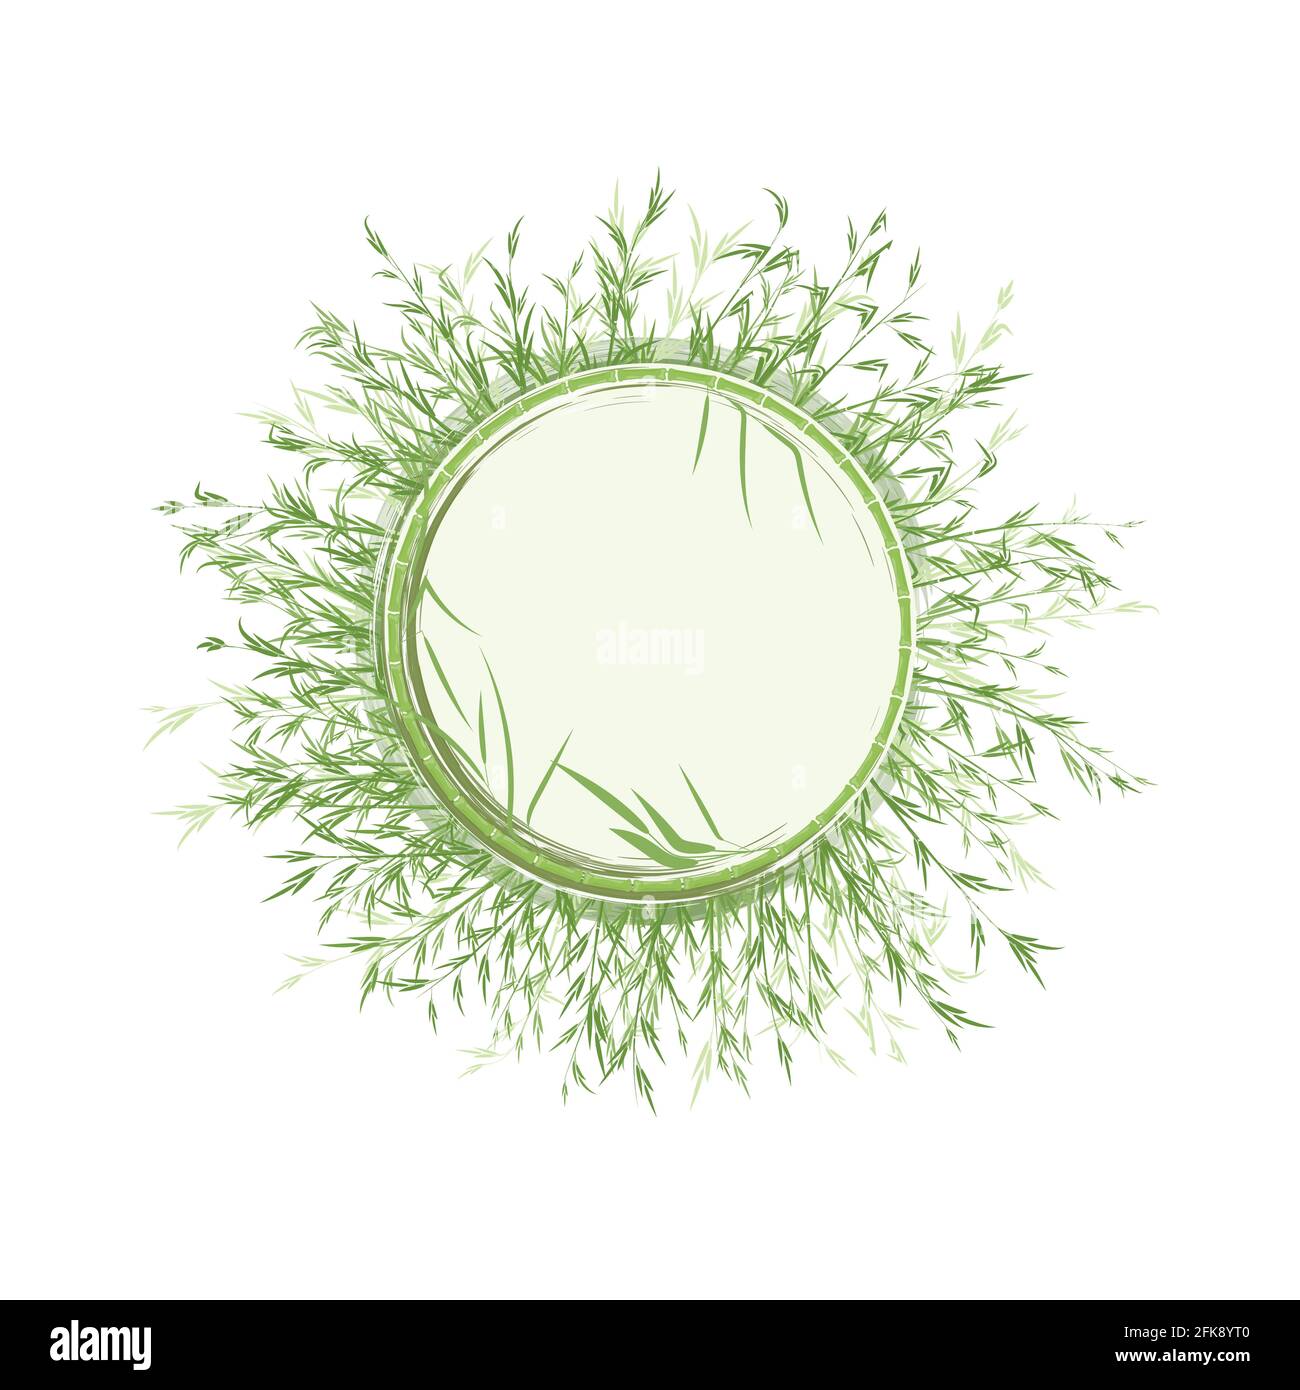 Bambuswald in Form eines runden Dekorrahmens mit Aquarell-Effekt. Platz für Text oder Logo. Vektorgrafik isoliert auf weißem Hintergrund Stock Vektor